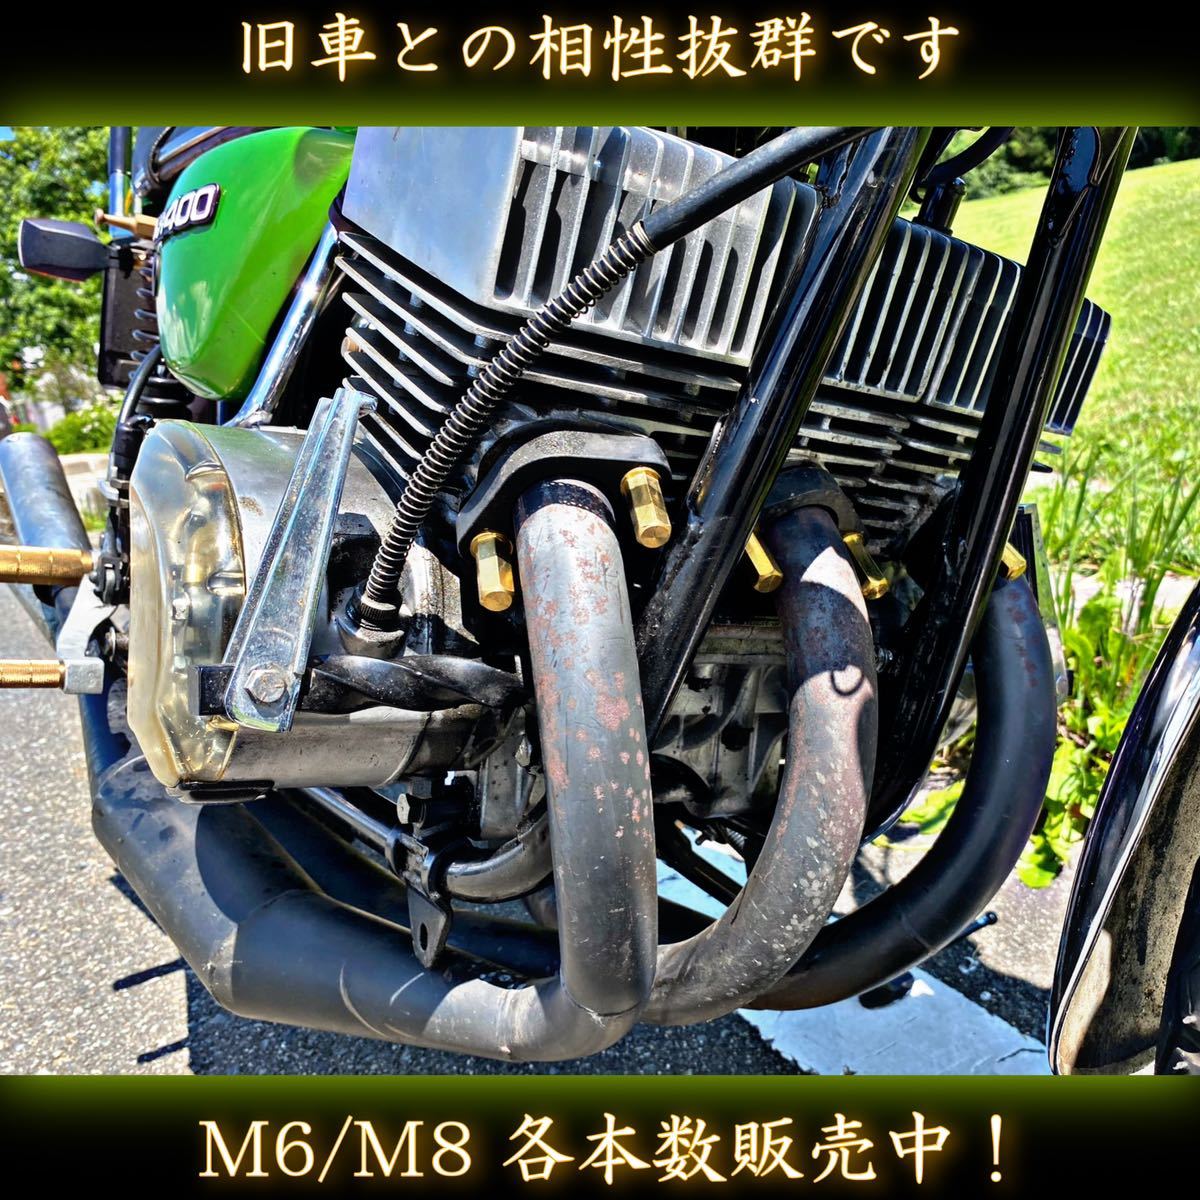 M6 真鍮ナット 6本 真鍮鋼製 スーパーロング マフラー フランジナット 旧車會 族車 当時物 ゼファー XJR インパルス_画像9